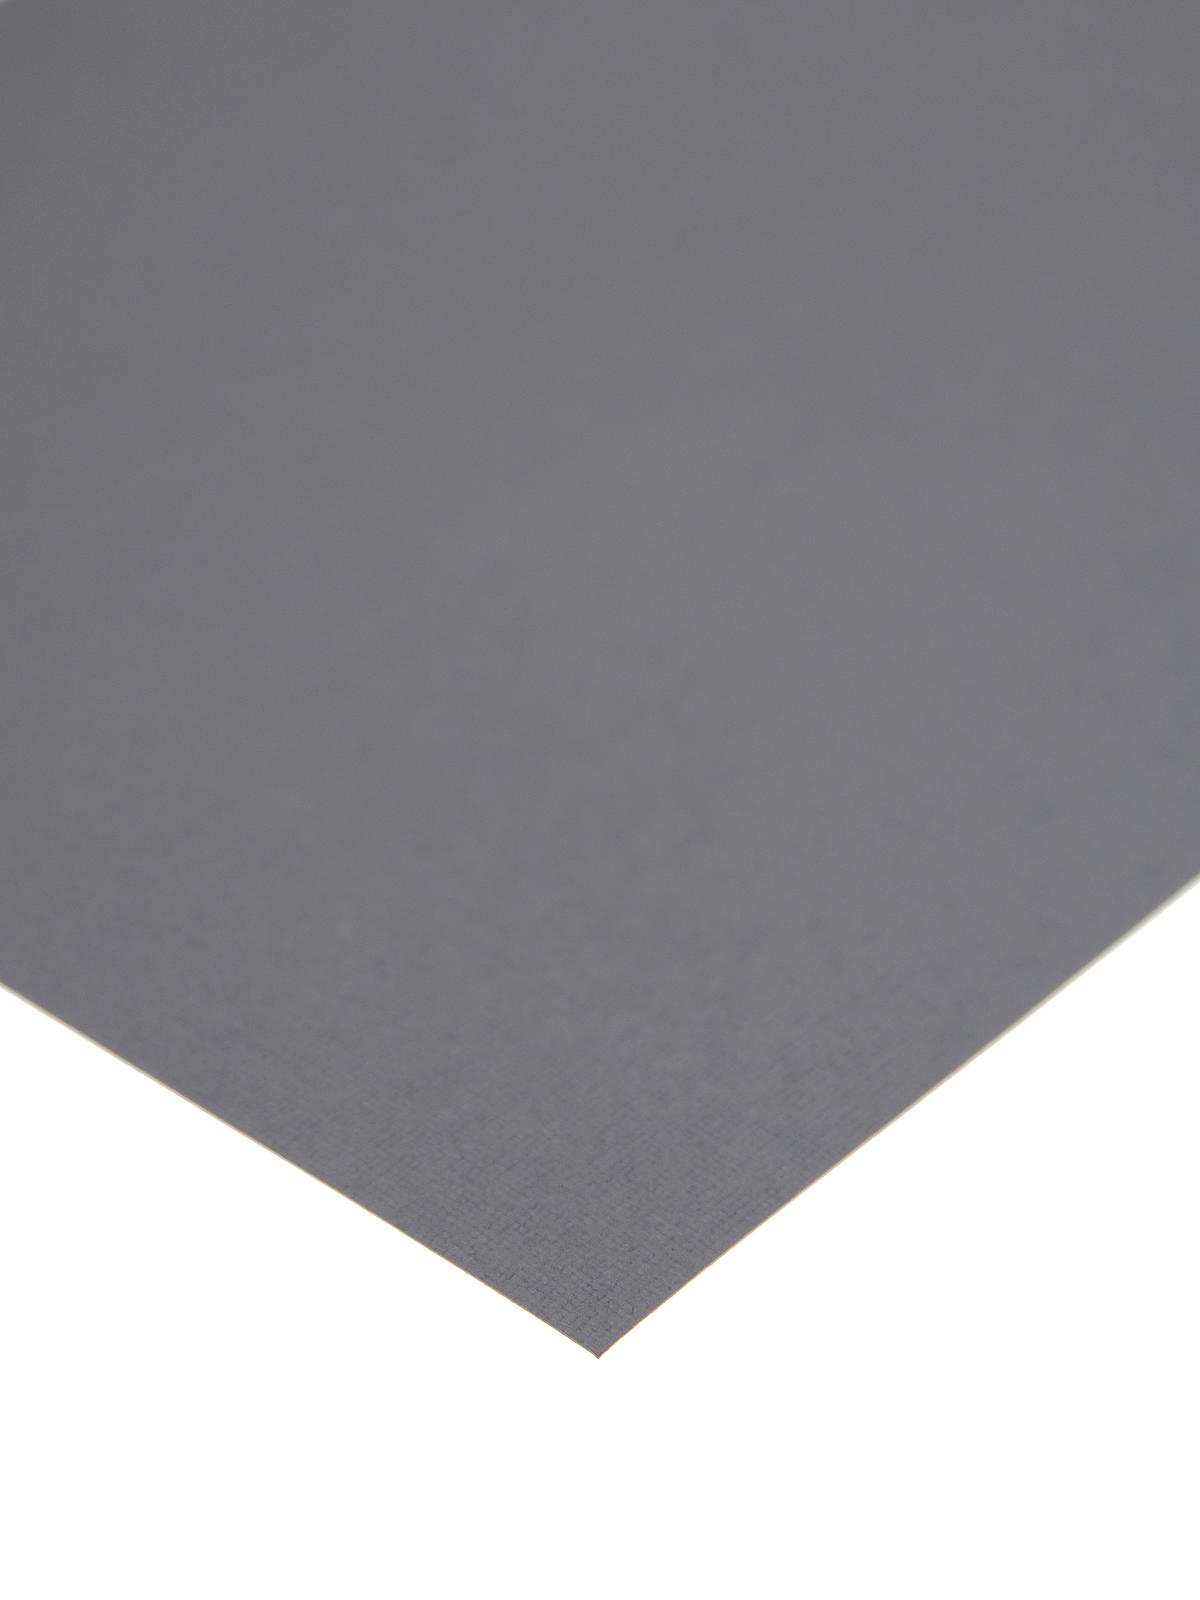 80 Lb. Canvas 8.5 In. X 11 In. Sheet Cloak Gray